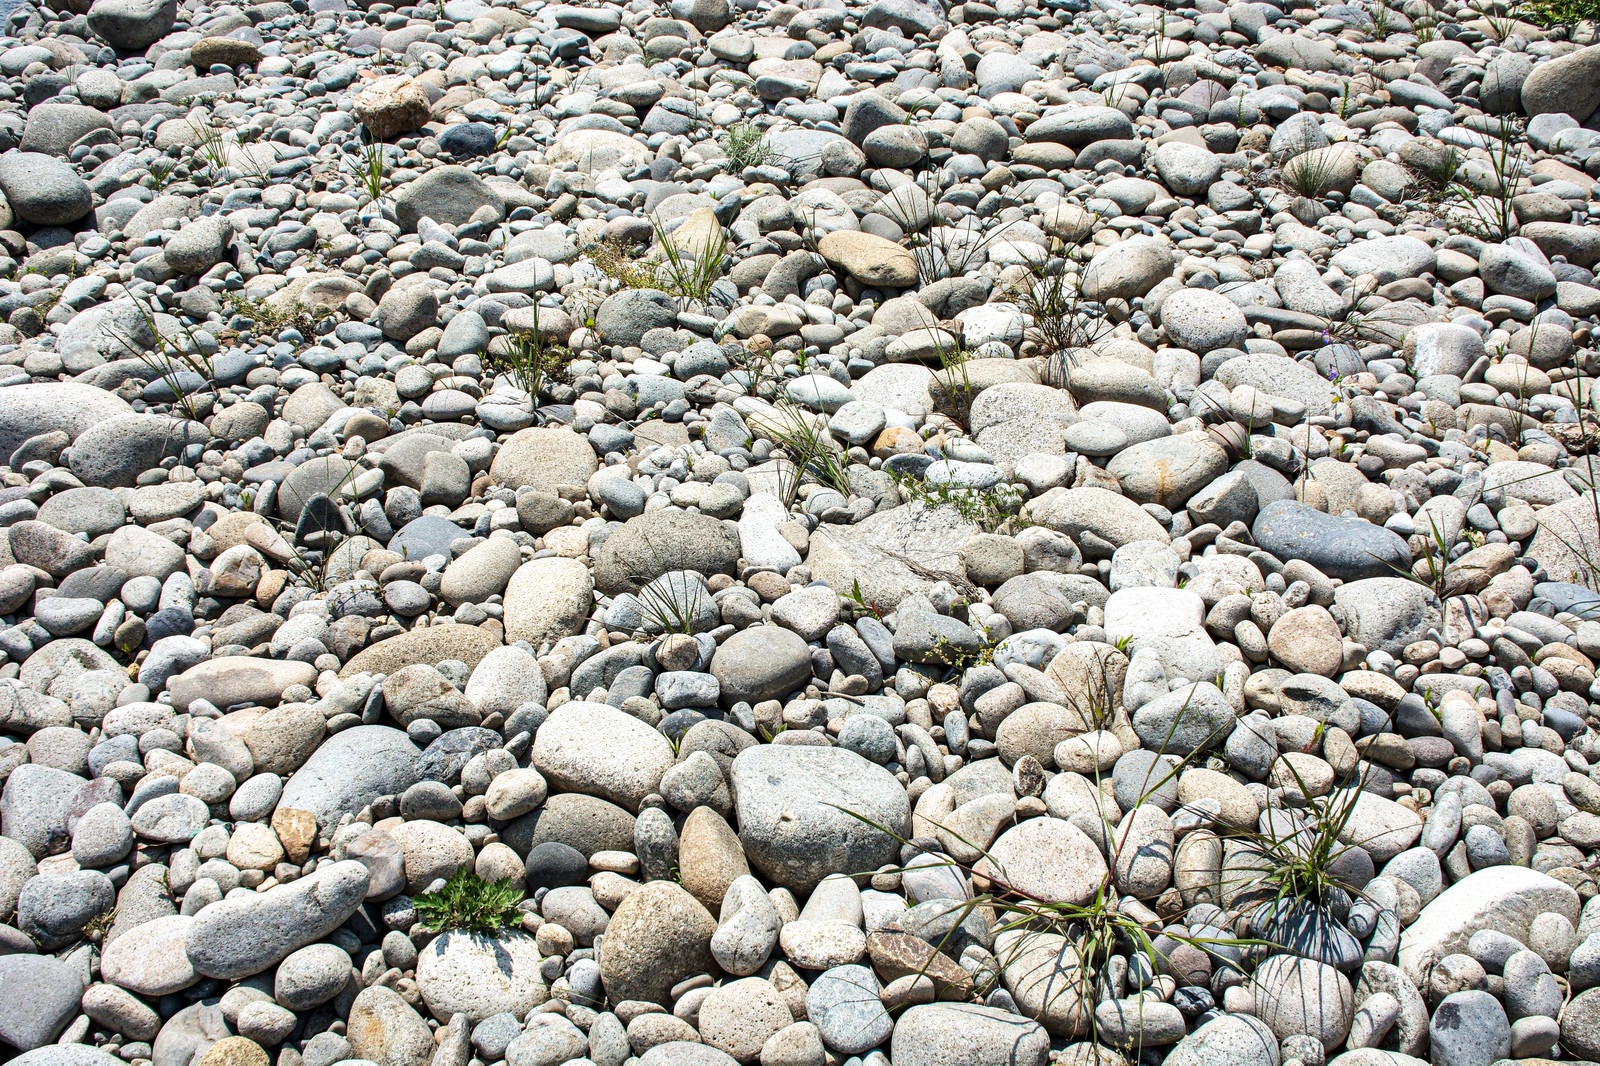 「丸いコロコロした石が並ぶ歩きにくい河原」の写真